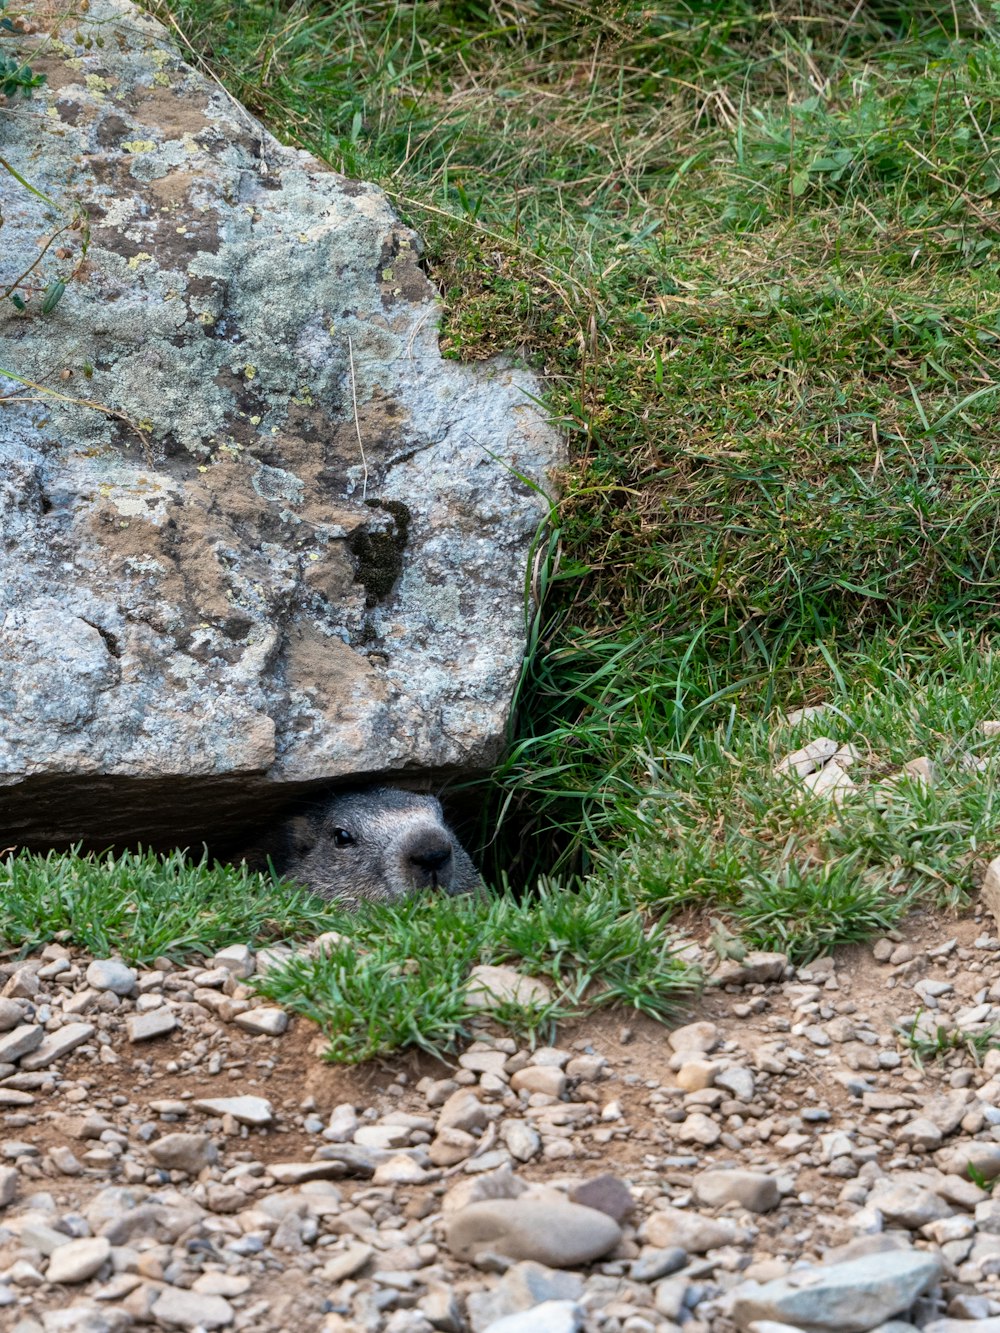 ein kleines Tier, das sich unter einem großen Felsen versteckt